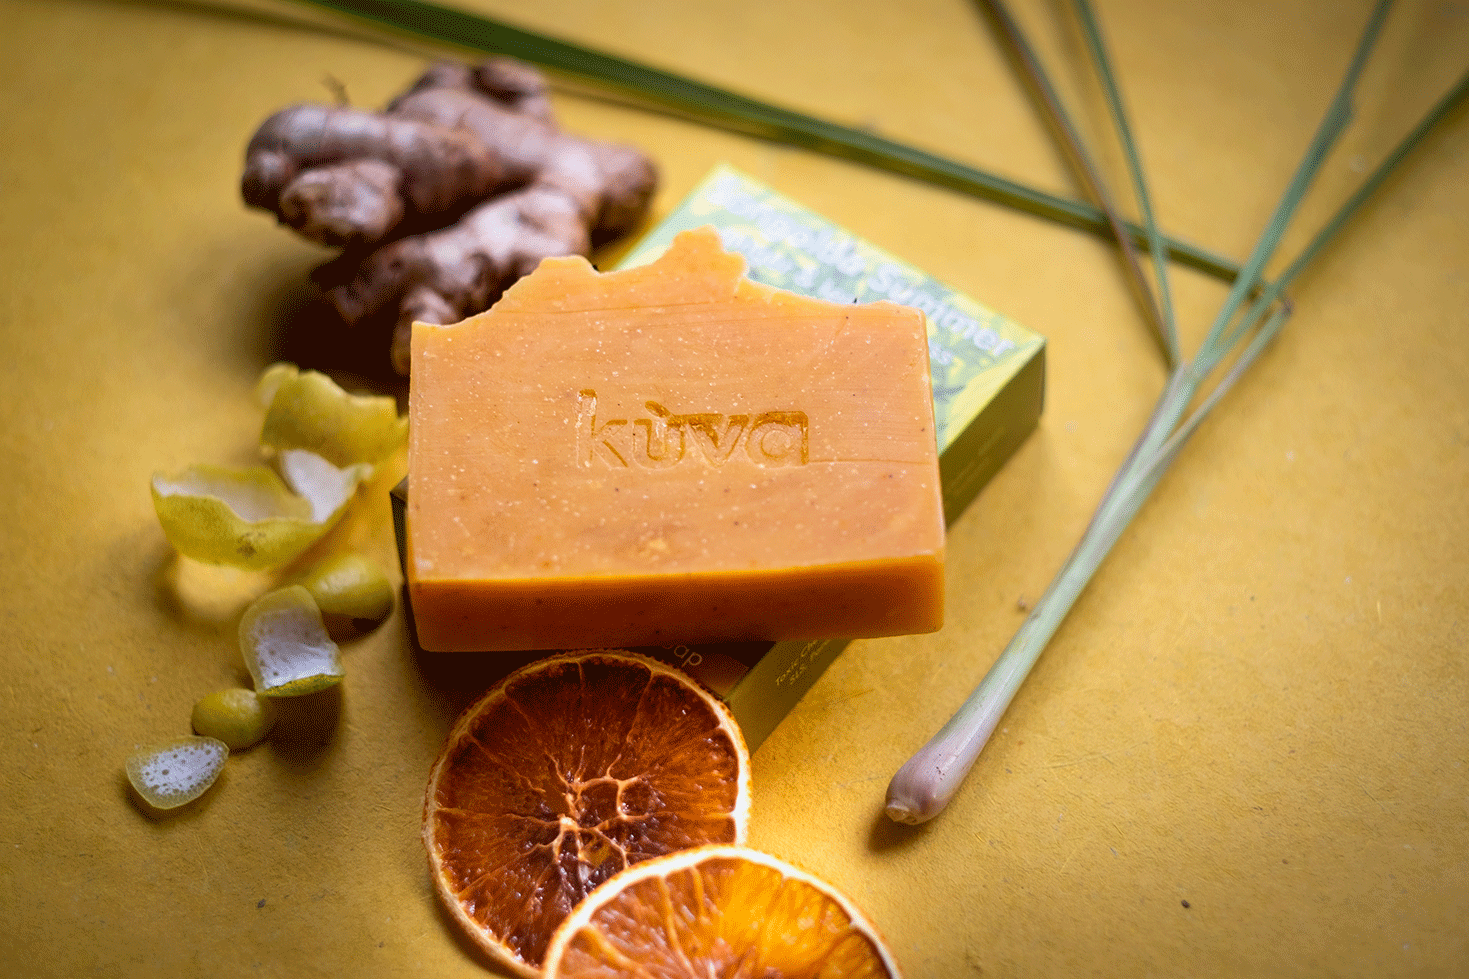 kuva sangolda summer natural handmade soap